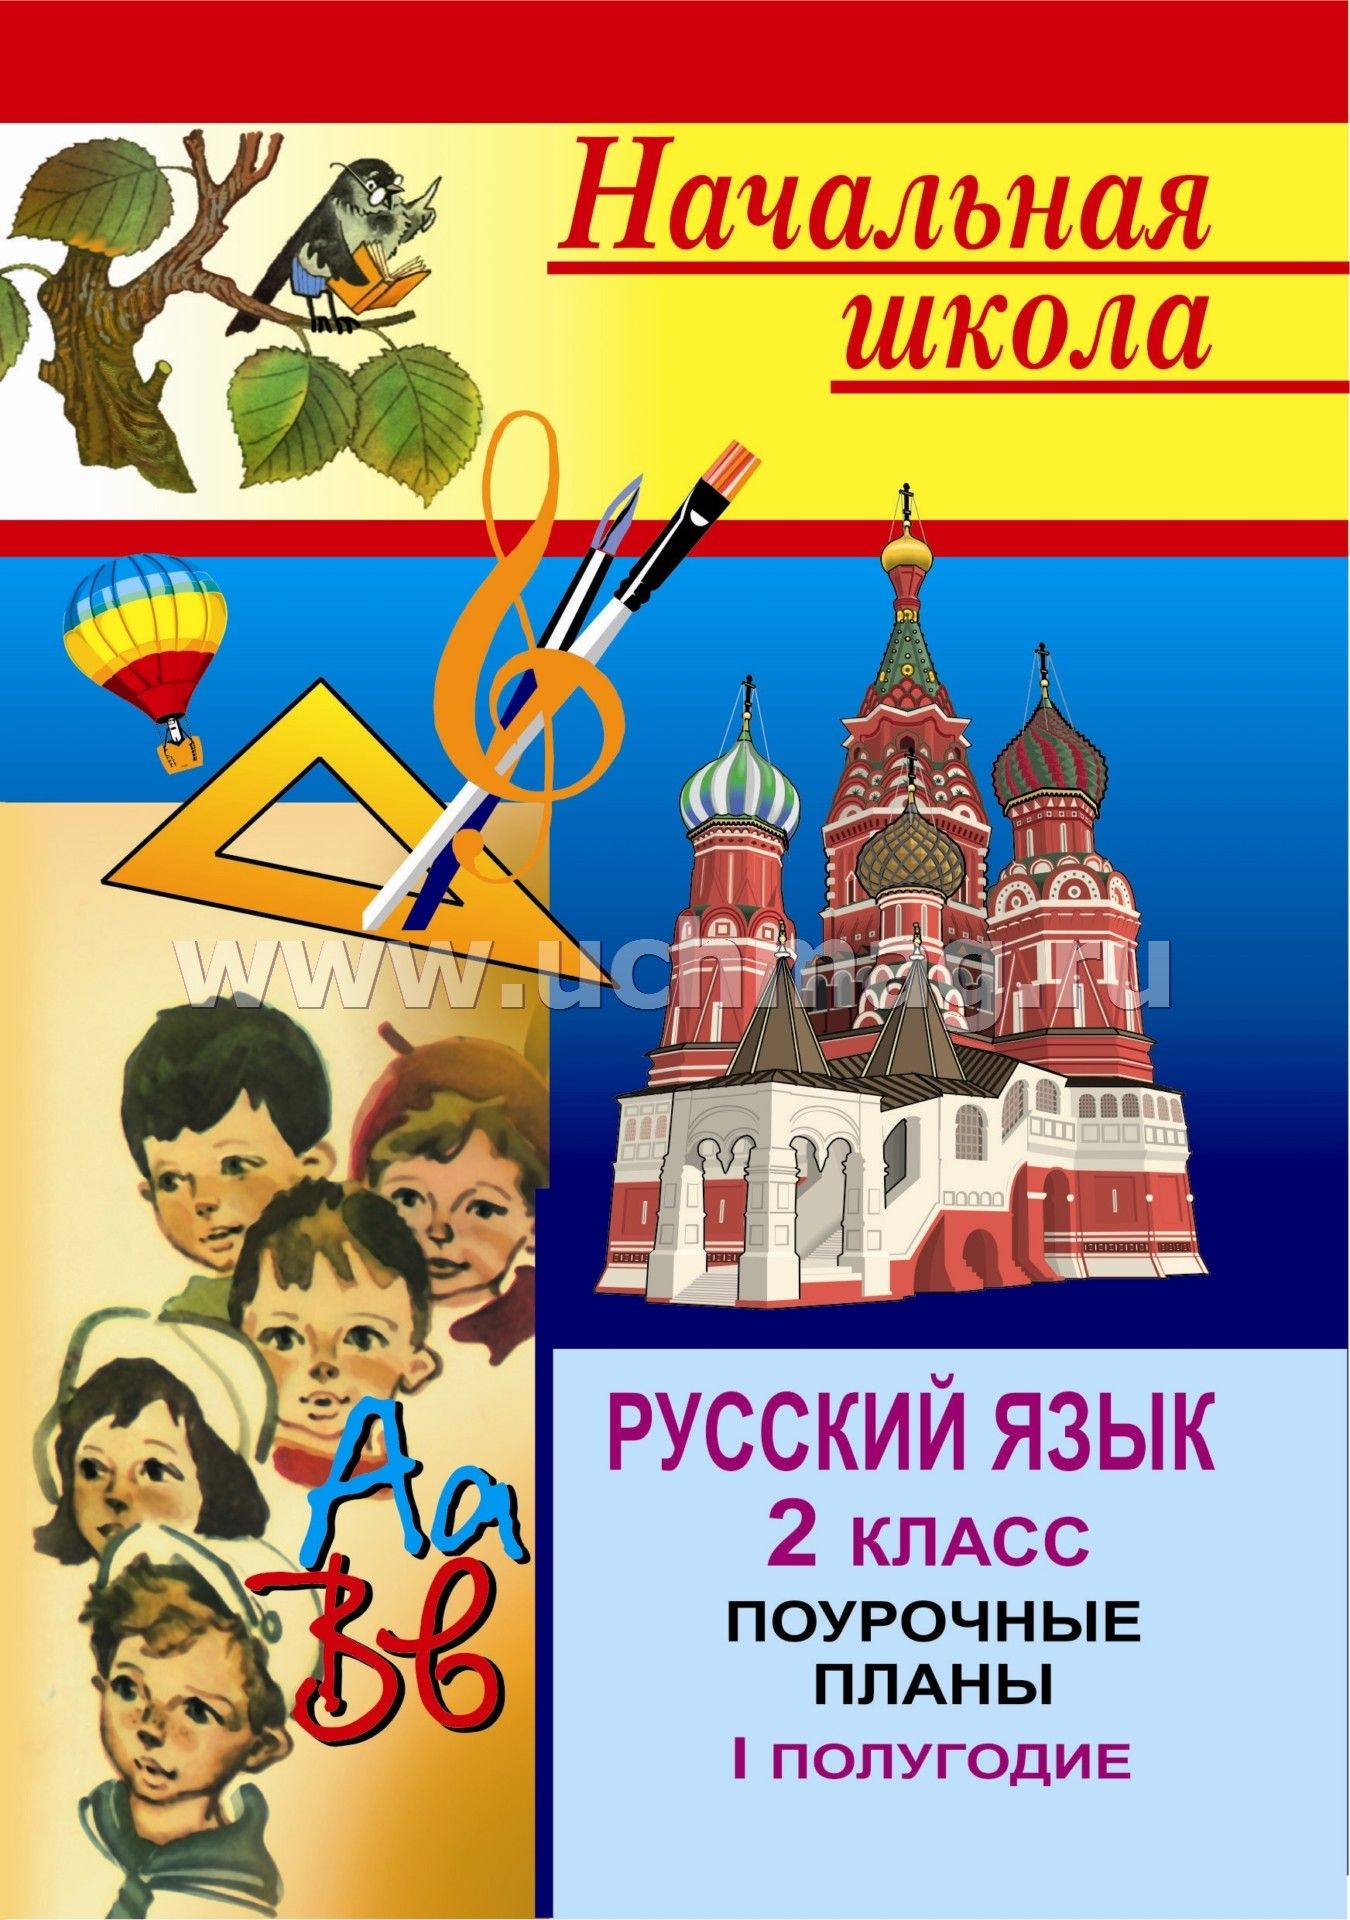 Поурочные планы 4 класса по русскому языку рамзаева скачать бесплатно